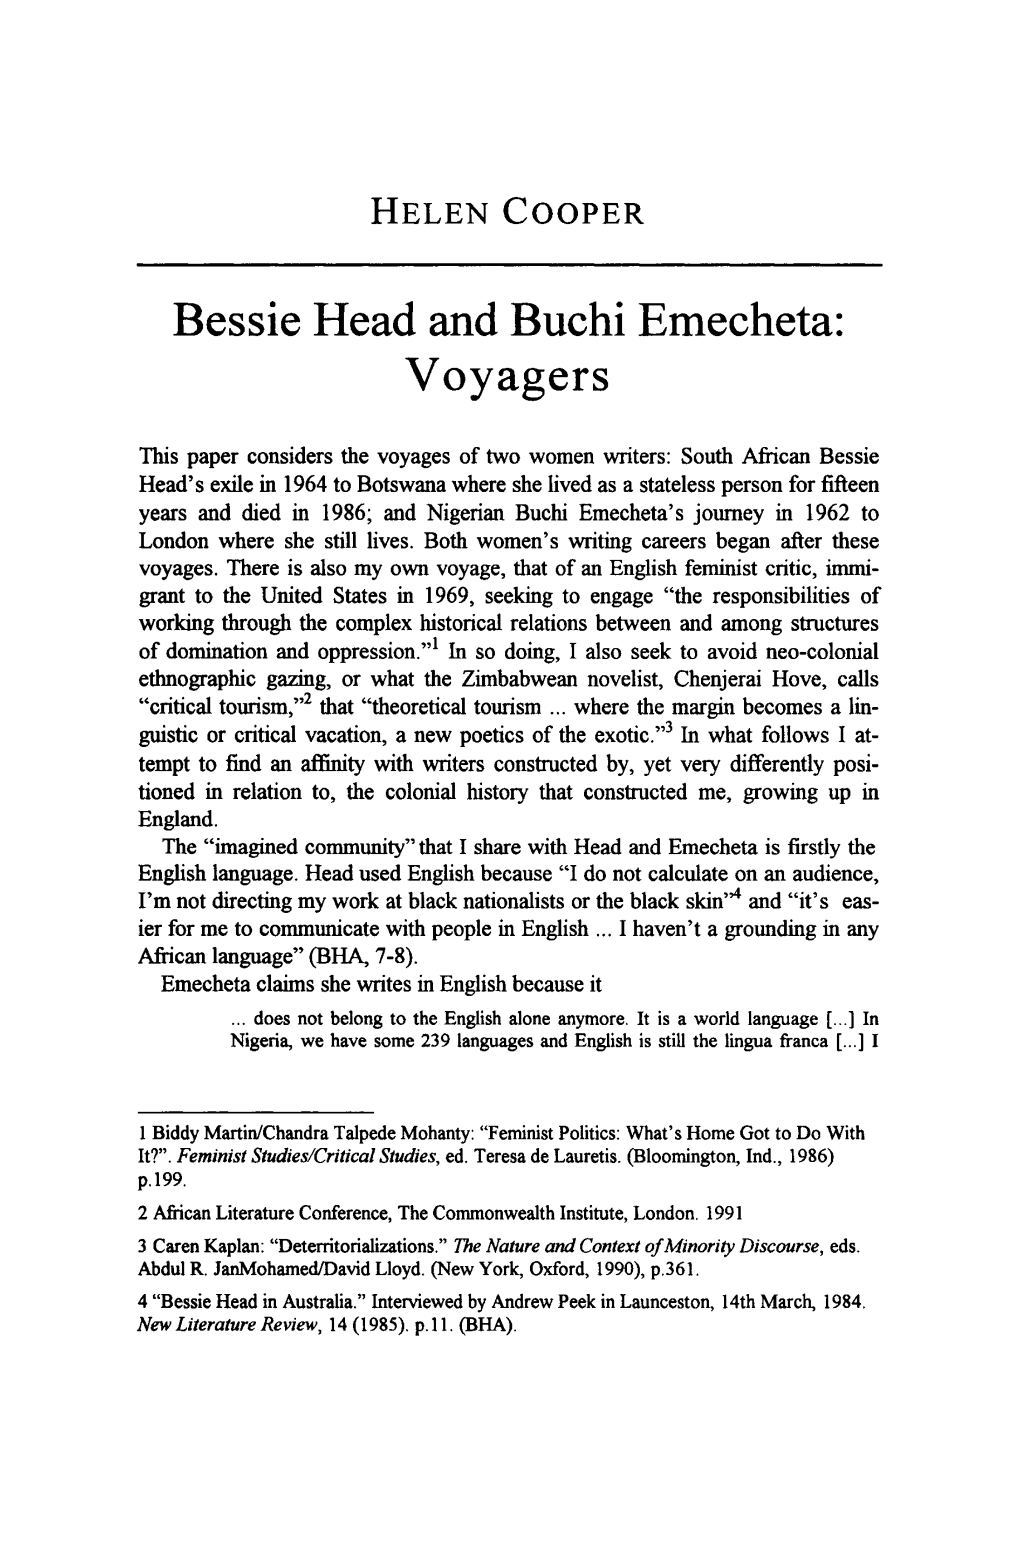 Bessie Head and Buchi Emecheta: Voyagers